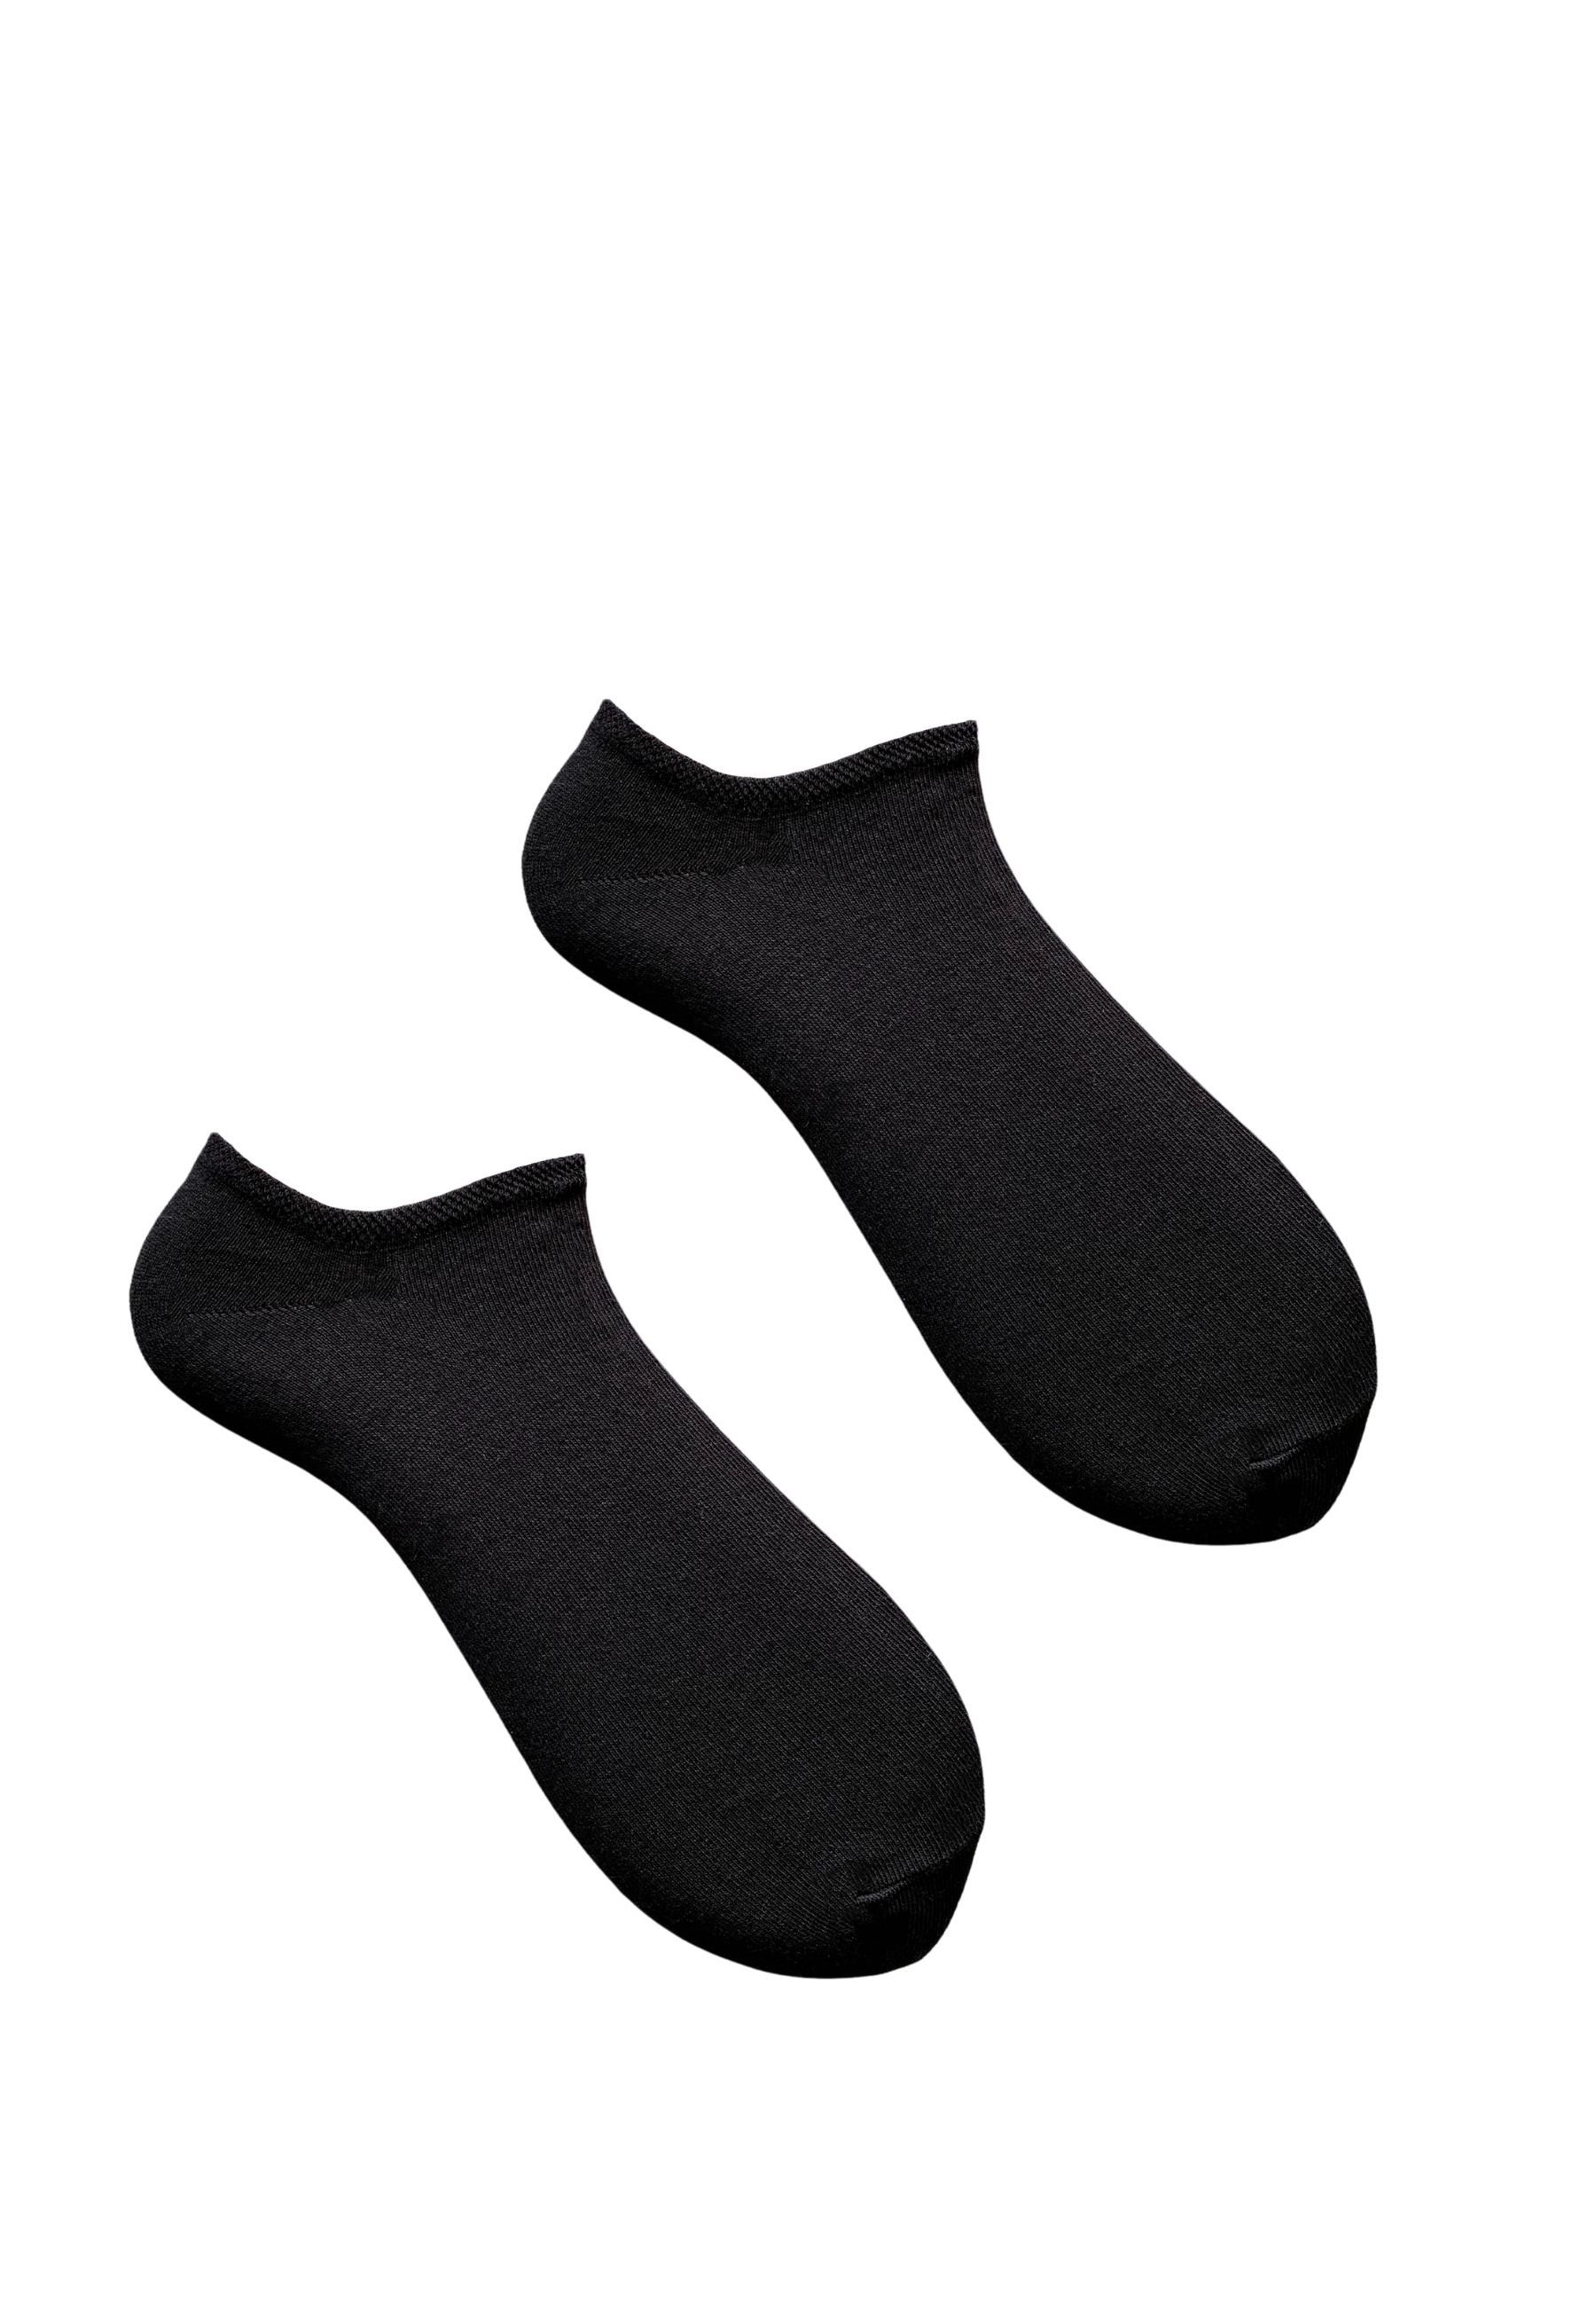 HESE SOX Sneakersocken Schwarz Socken 5 PAAR SNEAKERSOCKEN BAUMWOLLE